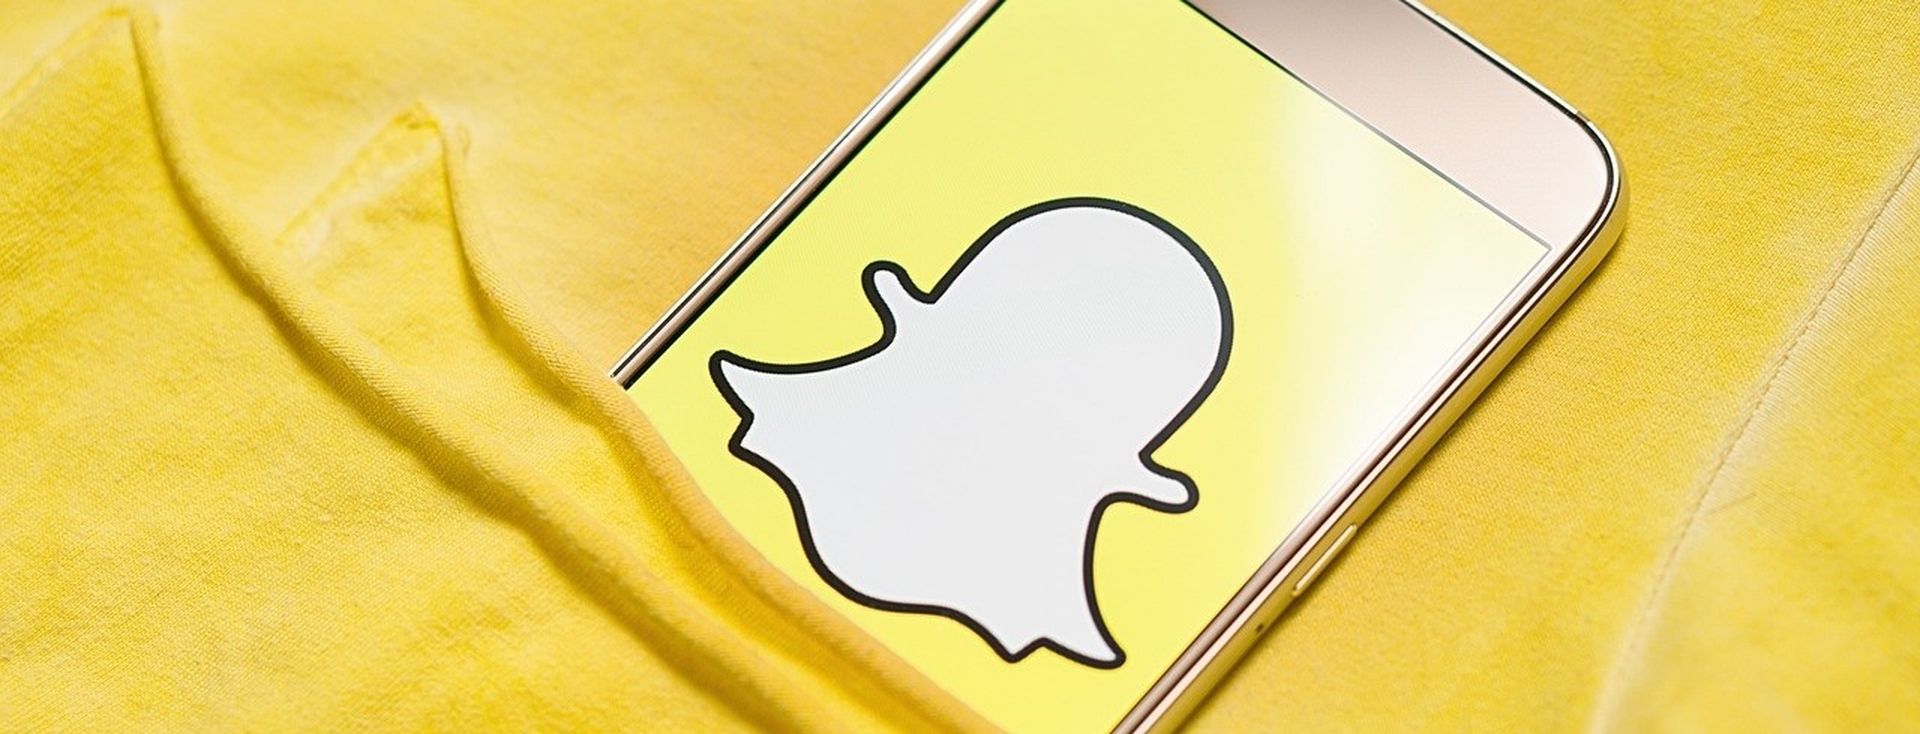 Come aggiungere filtri di posizione su Snapchat?